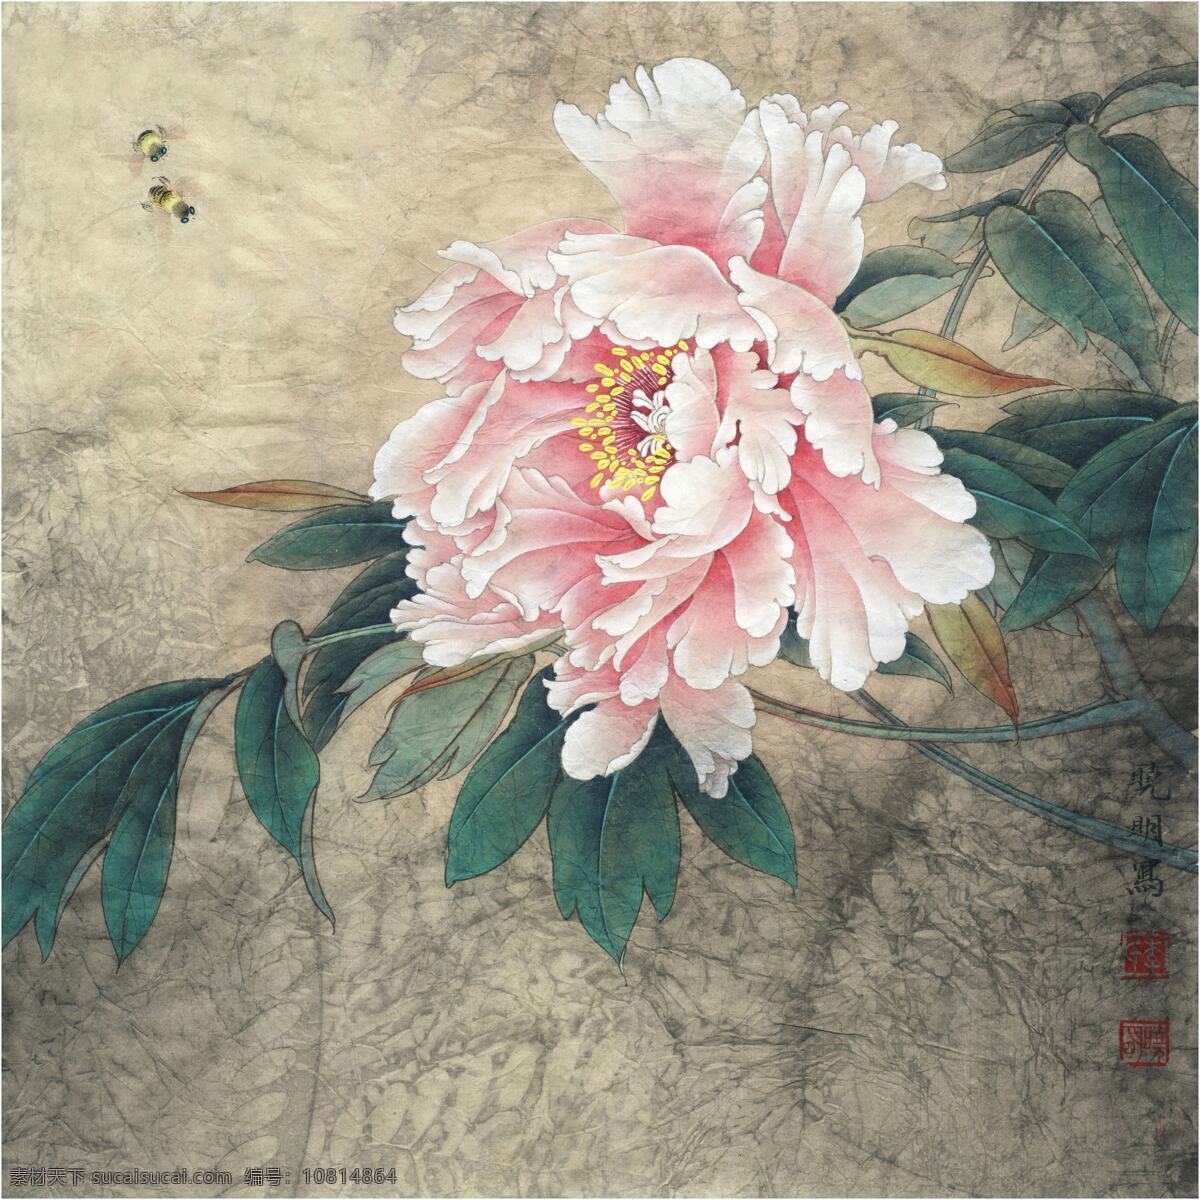 中国画 牡丹 国画 蜜蜂 印章 水墨画 书画文字 文化艺术